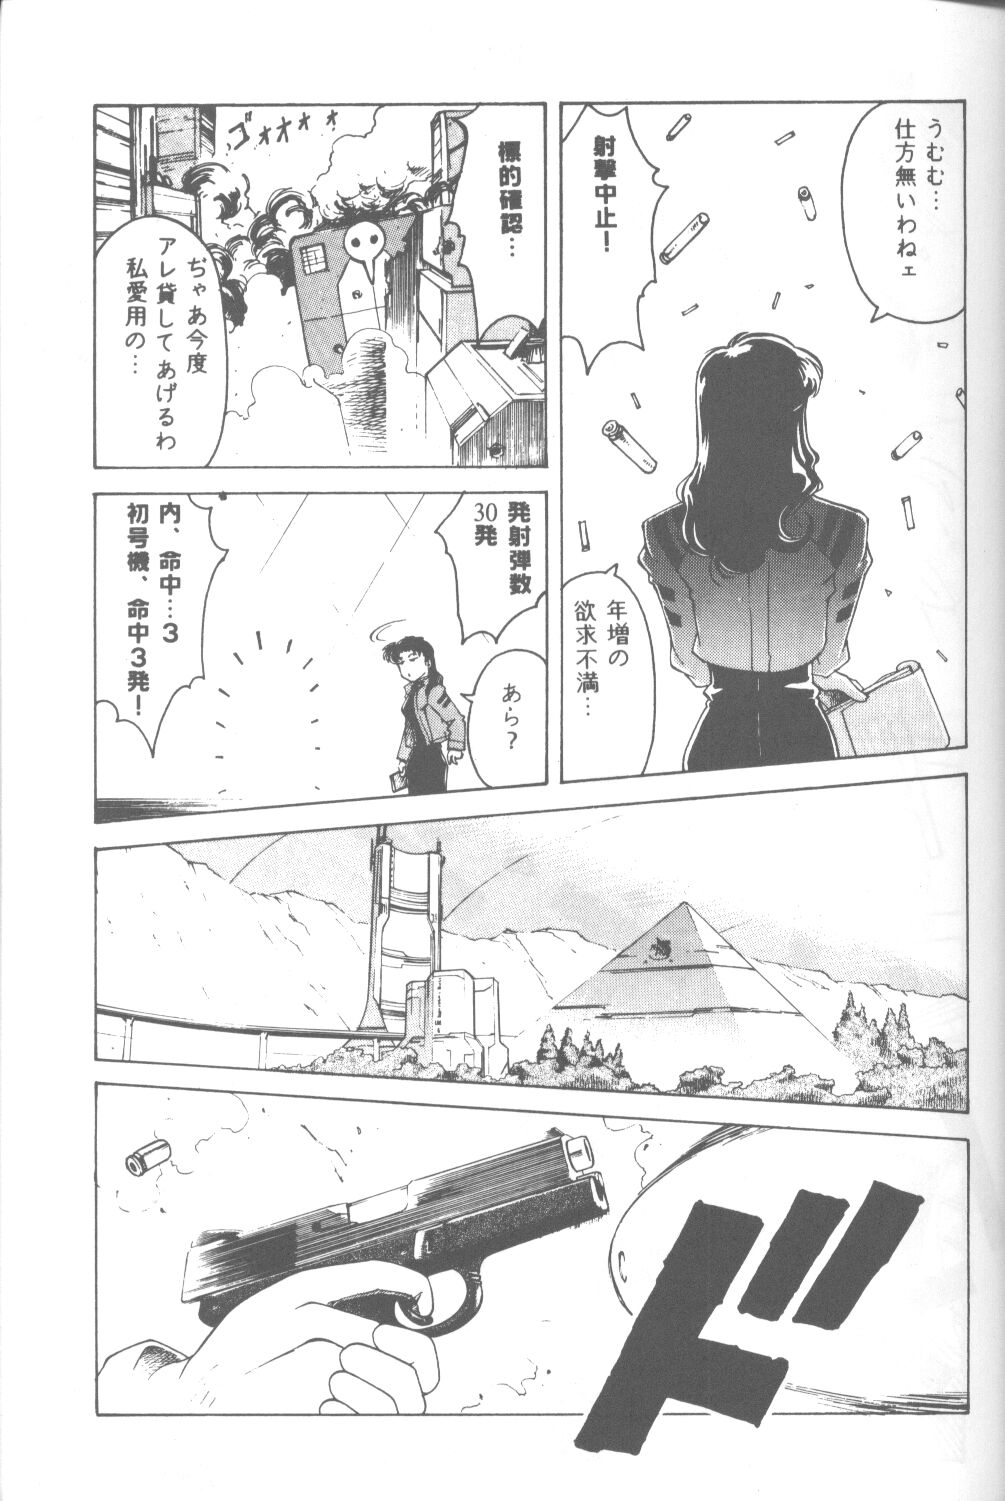 [Takahiro Kutugi] Friends Yes We're (Evangelion) page 36 full